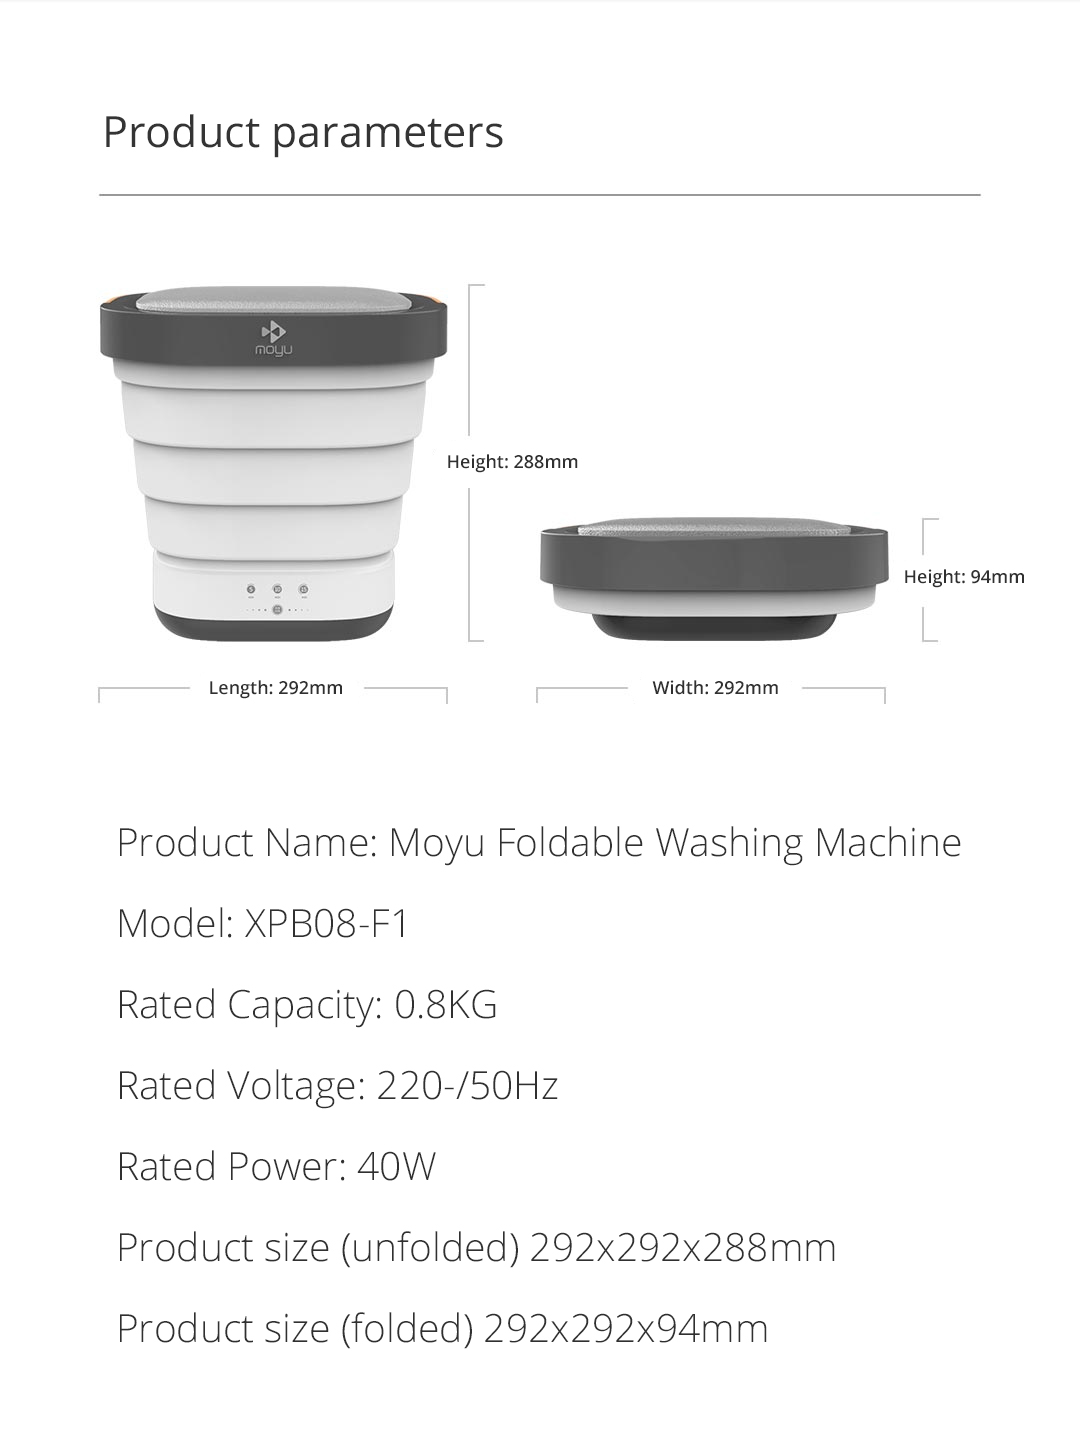 Product Name: Moyu Foldable Washing Machine Model: XPB08-Fl